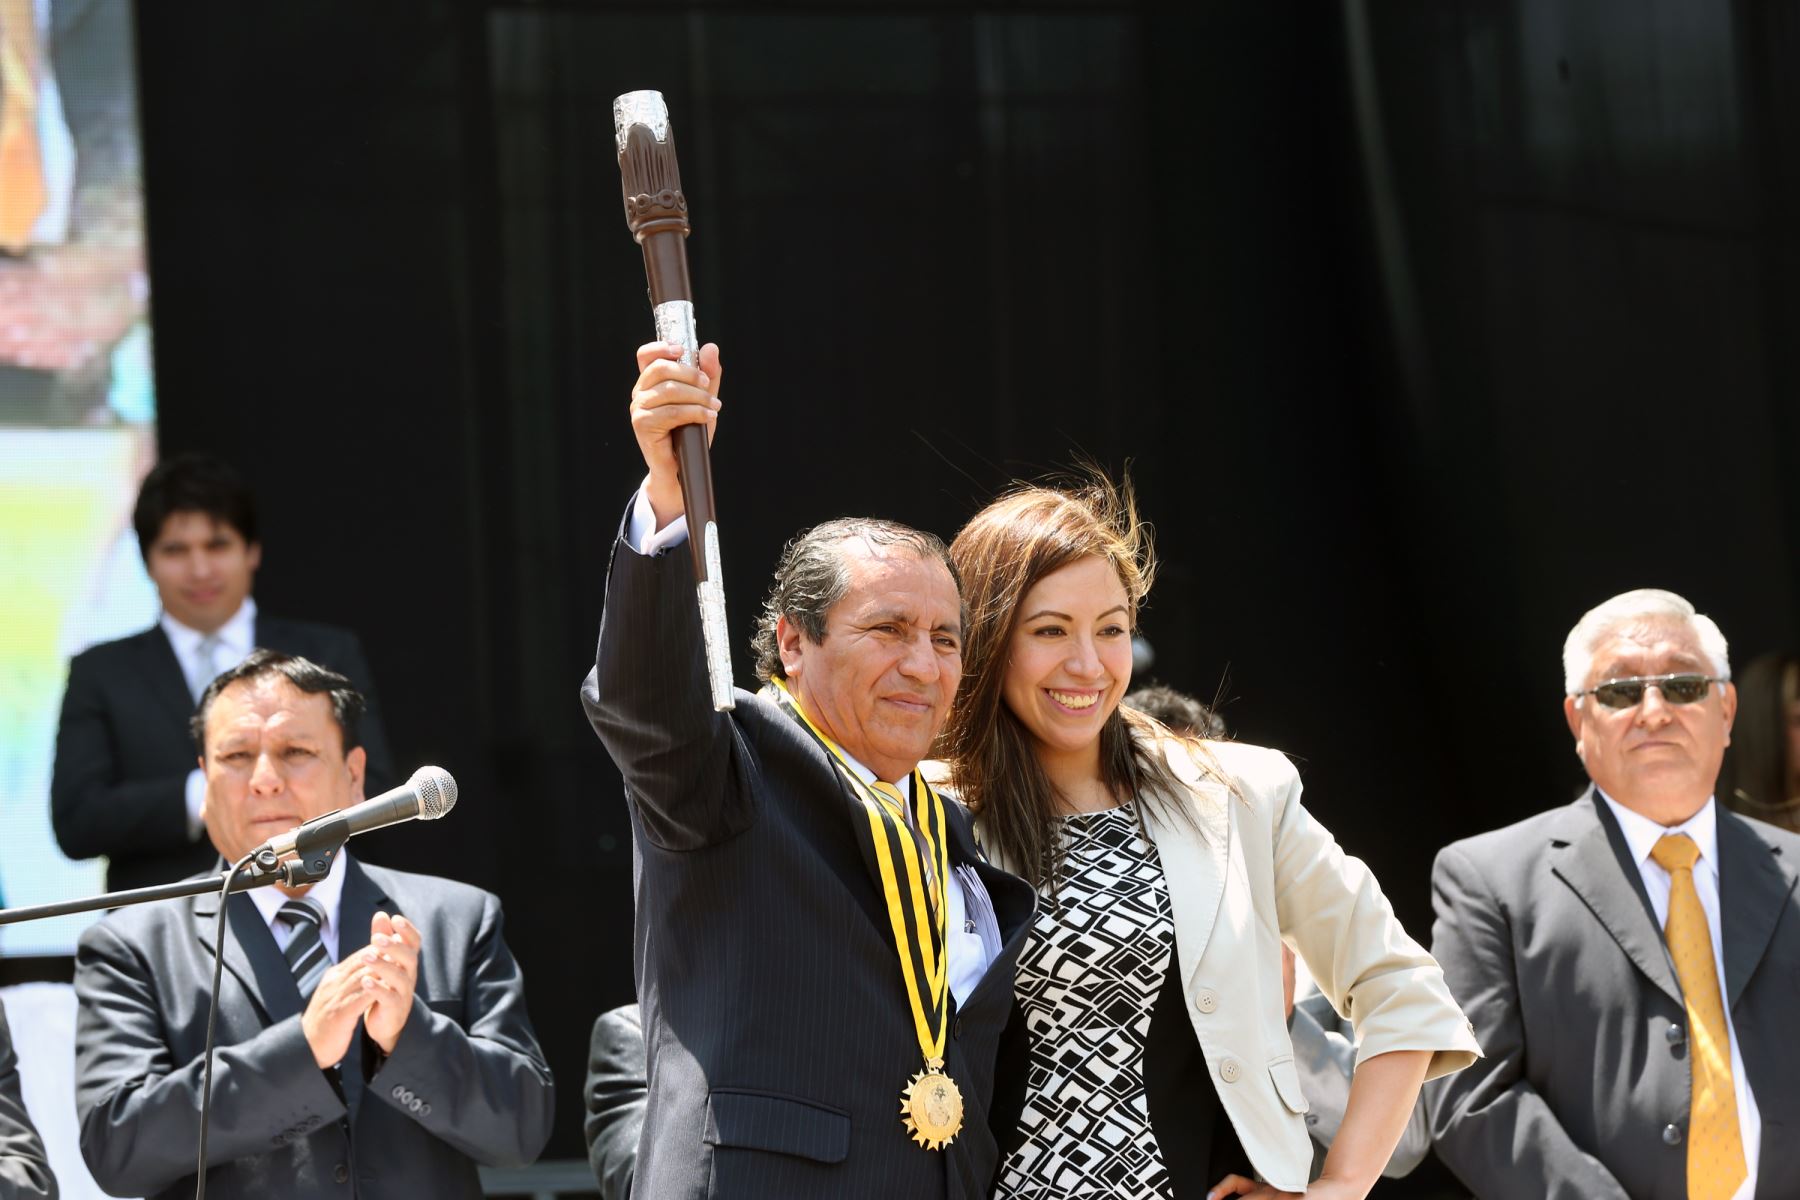 Alcalcde de Ate, Oscar Benavides Majino recibe el "varayoc" o bastón de mando de parte de su hija. ANDINA/Norman Córdova